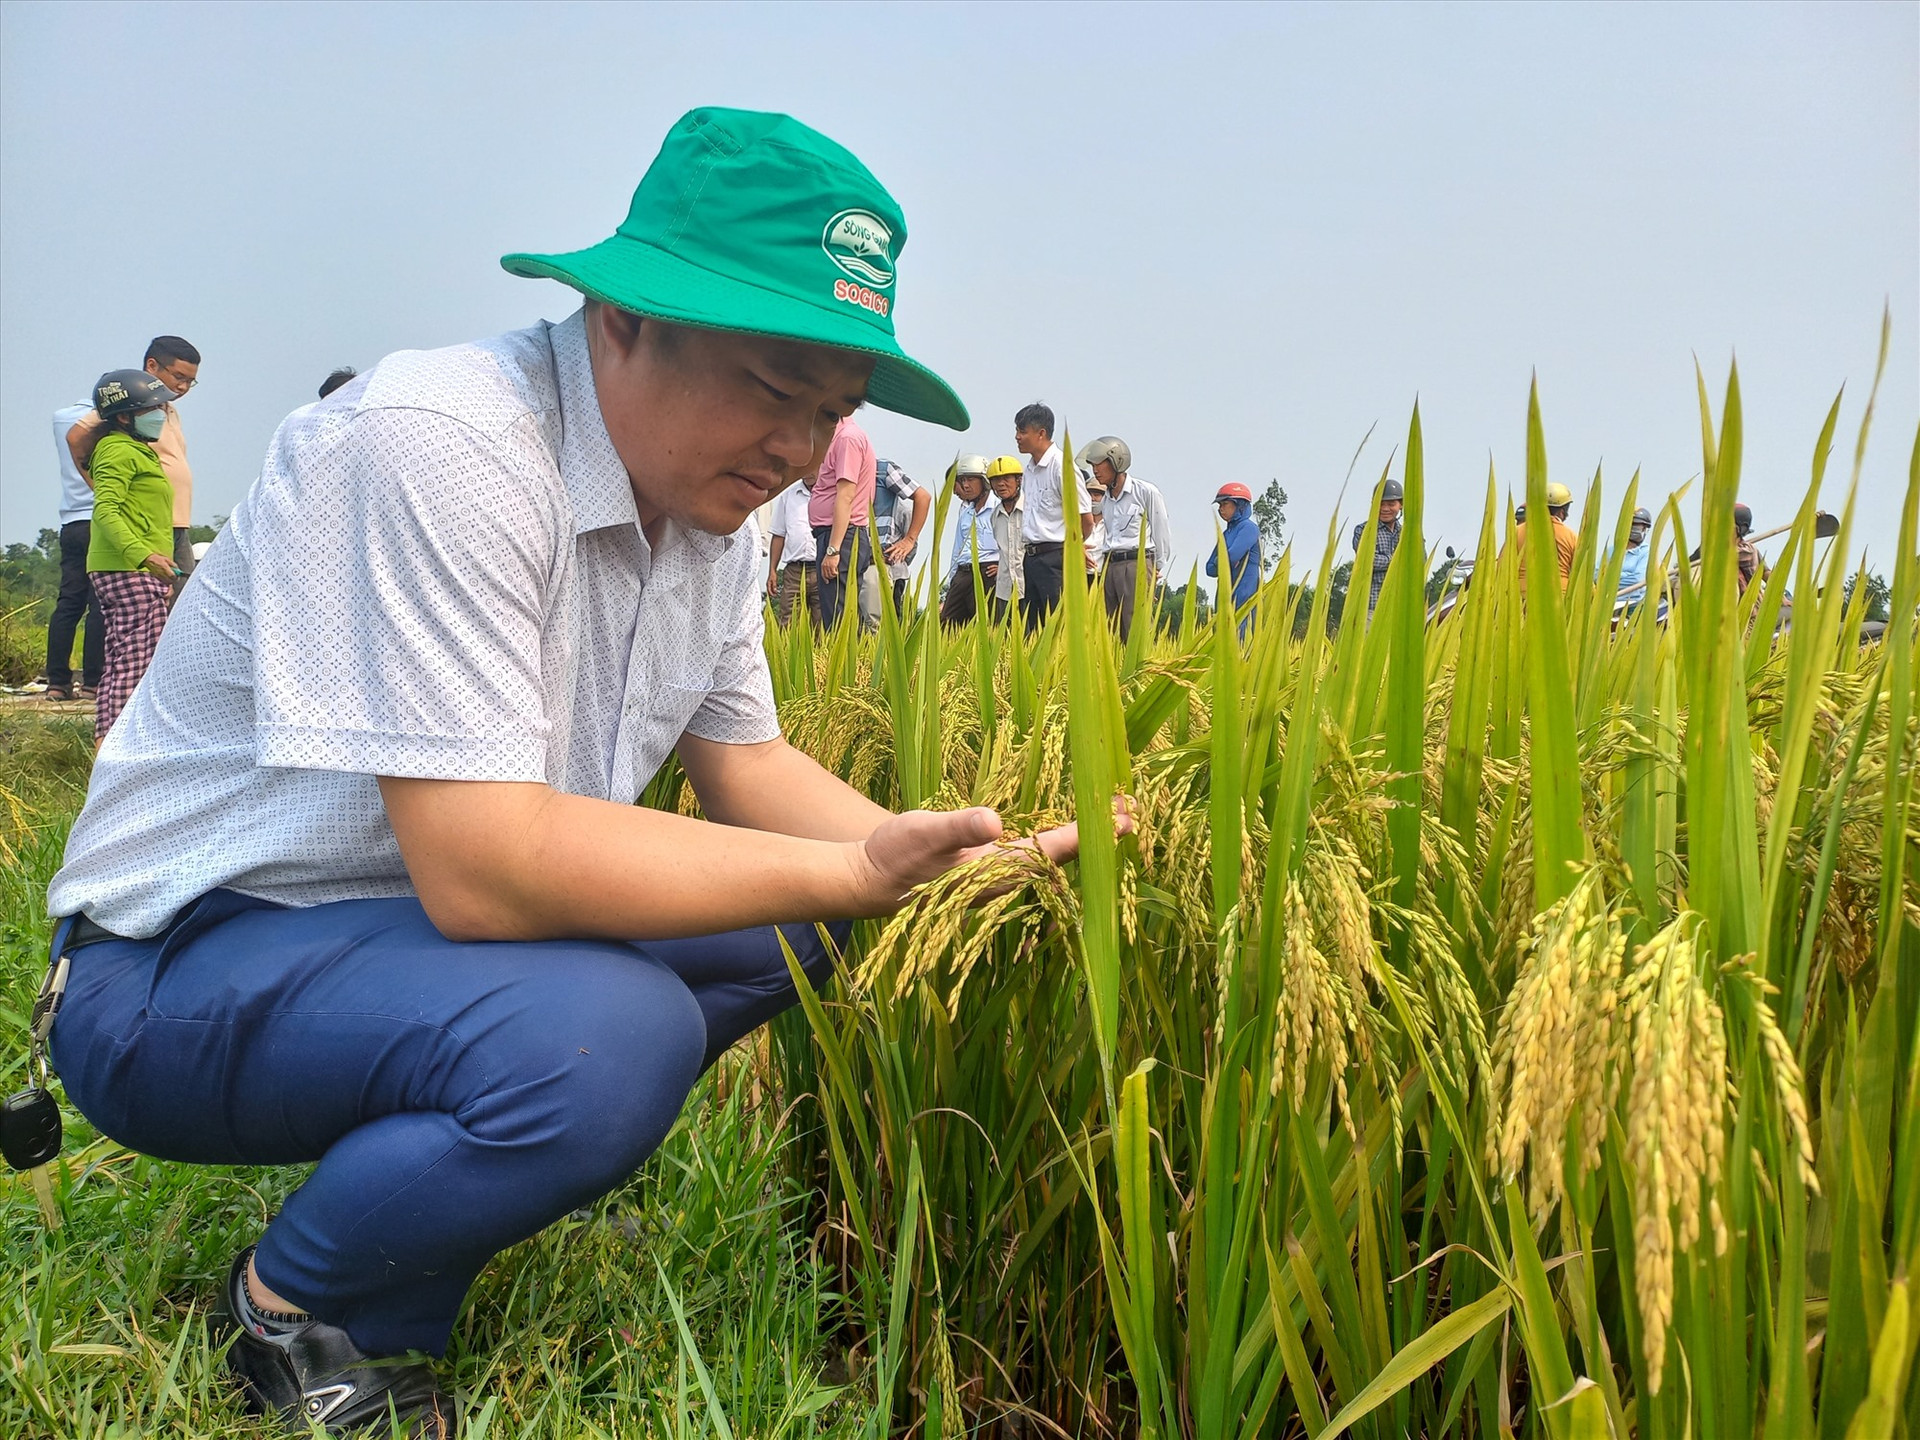 Mô hình sản xuất lúa sử dụng giống Hương Bình kết hợp phân bón Sông Gianh cho năng suất 70 tạ/ha. Ảnh: DUY THÁI